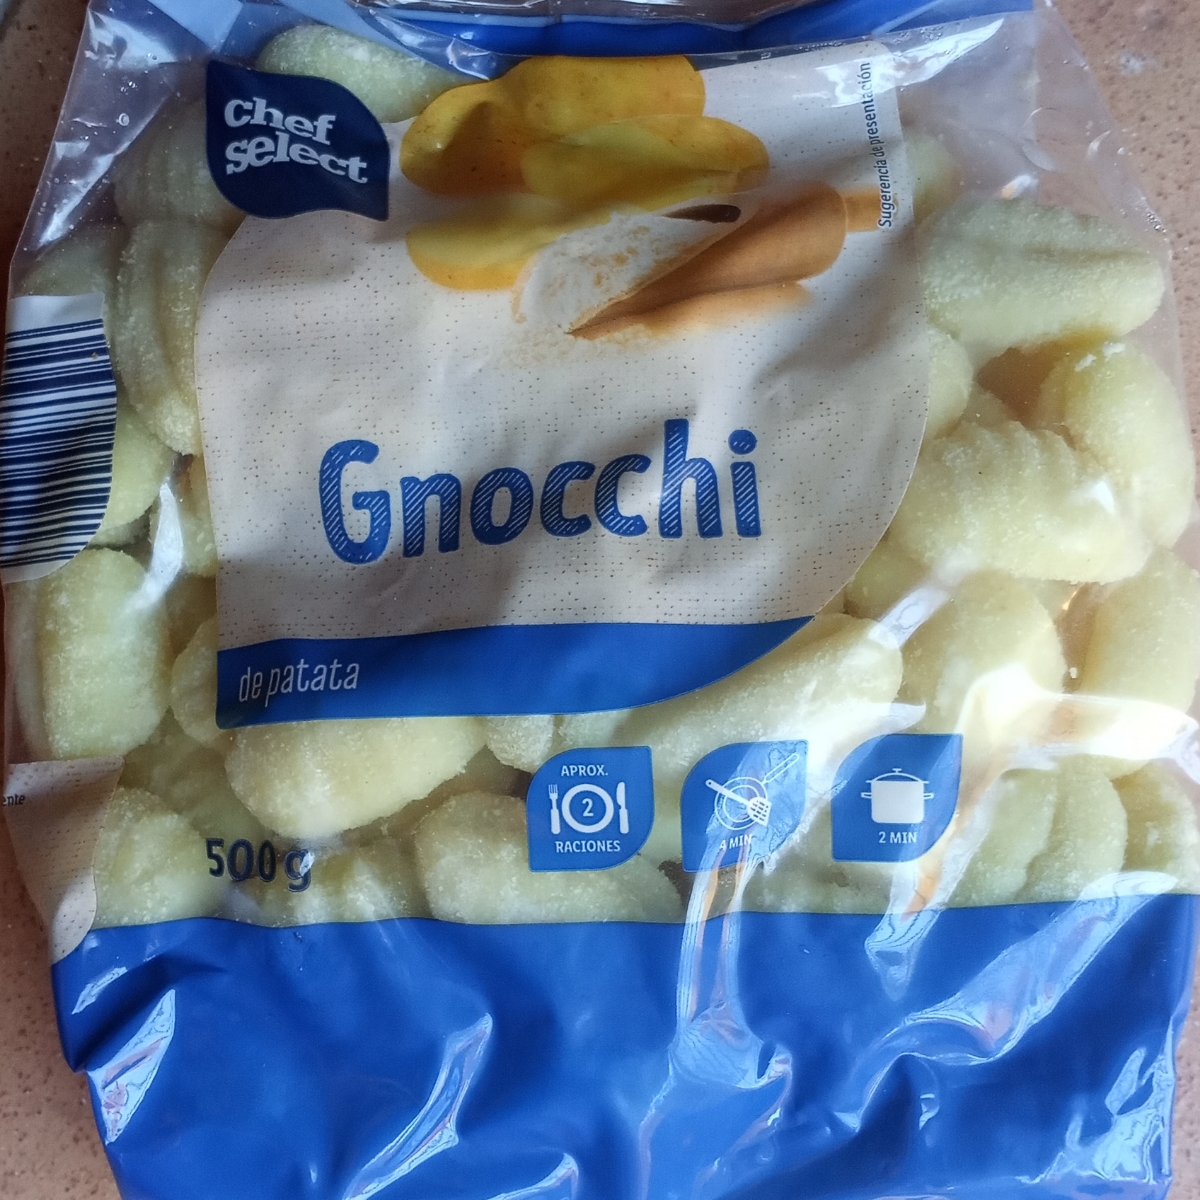 Review abillion patata | Gnocchi Select de Chef